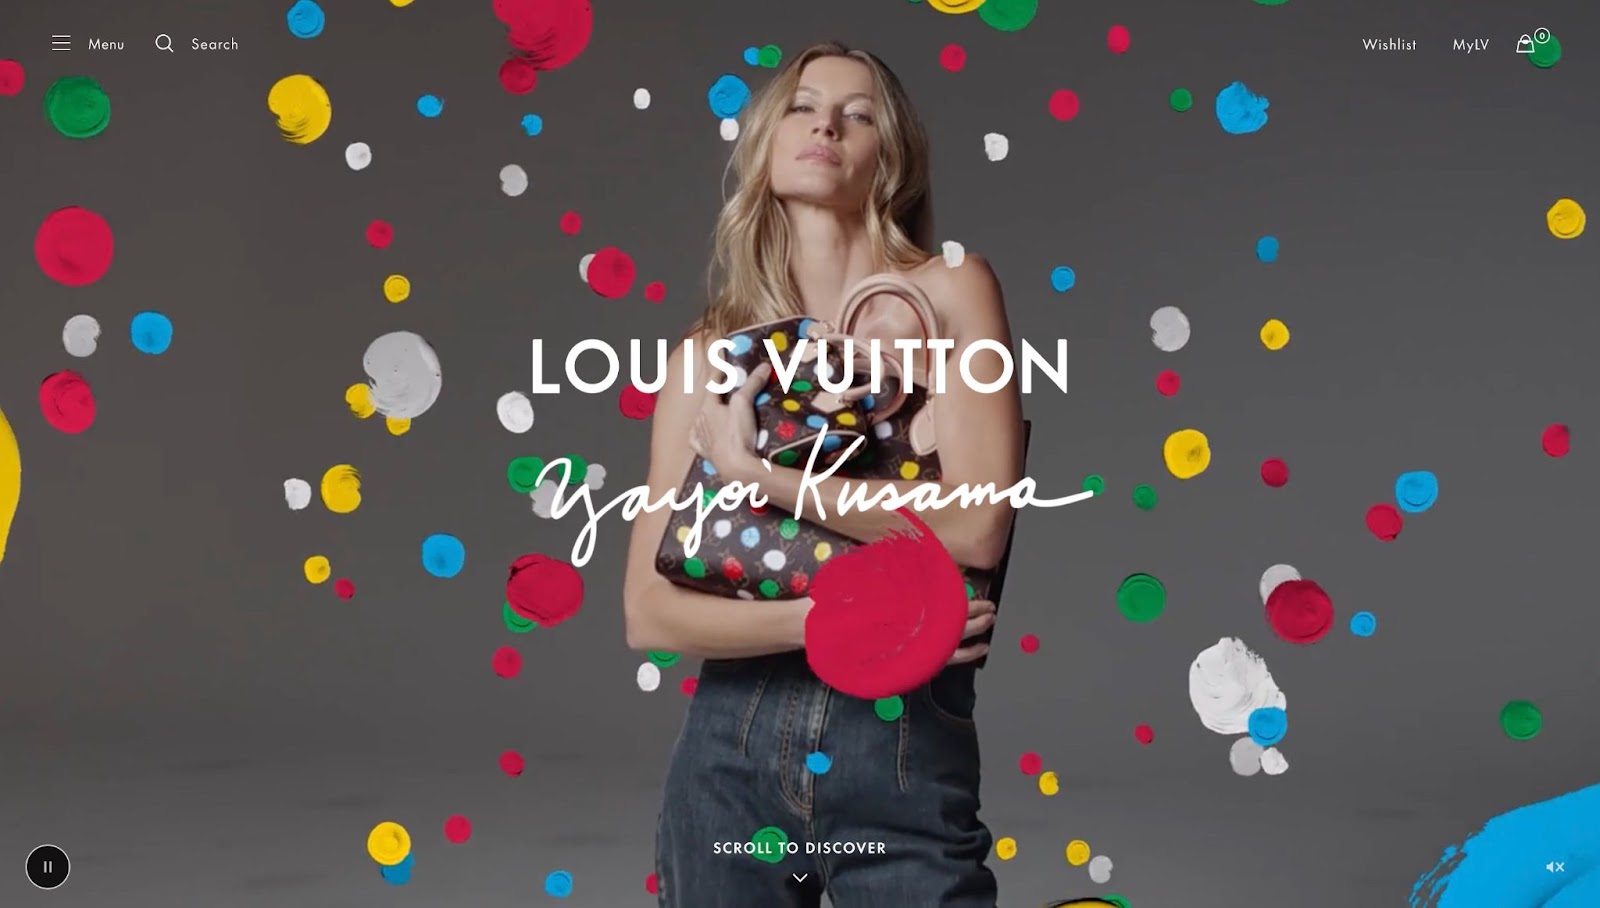 Una imagen de Gisele Bundchen en el complemento de Louis Vuitton x Yayoi Kusama. La presenta sosteniendo un bolso de la colección con lunares rodeándola.